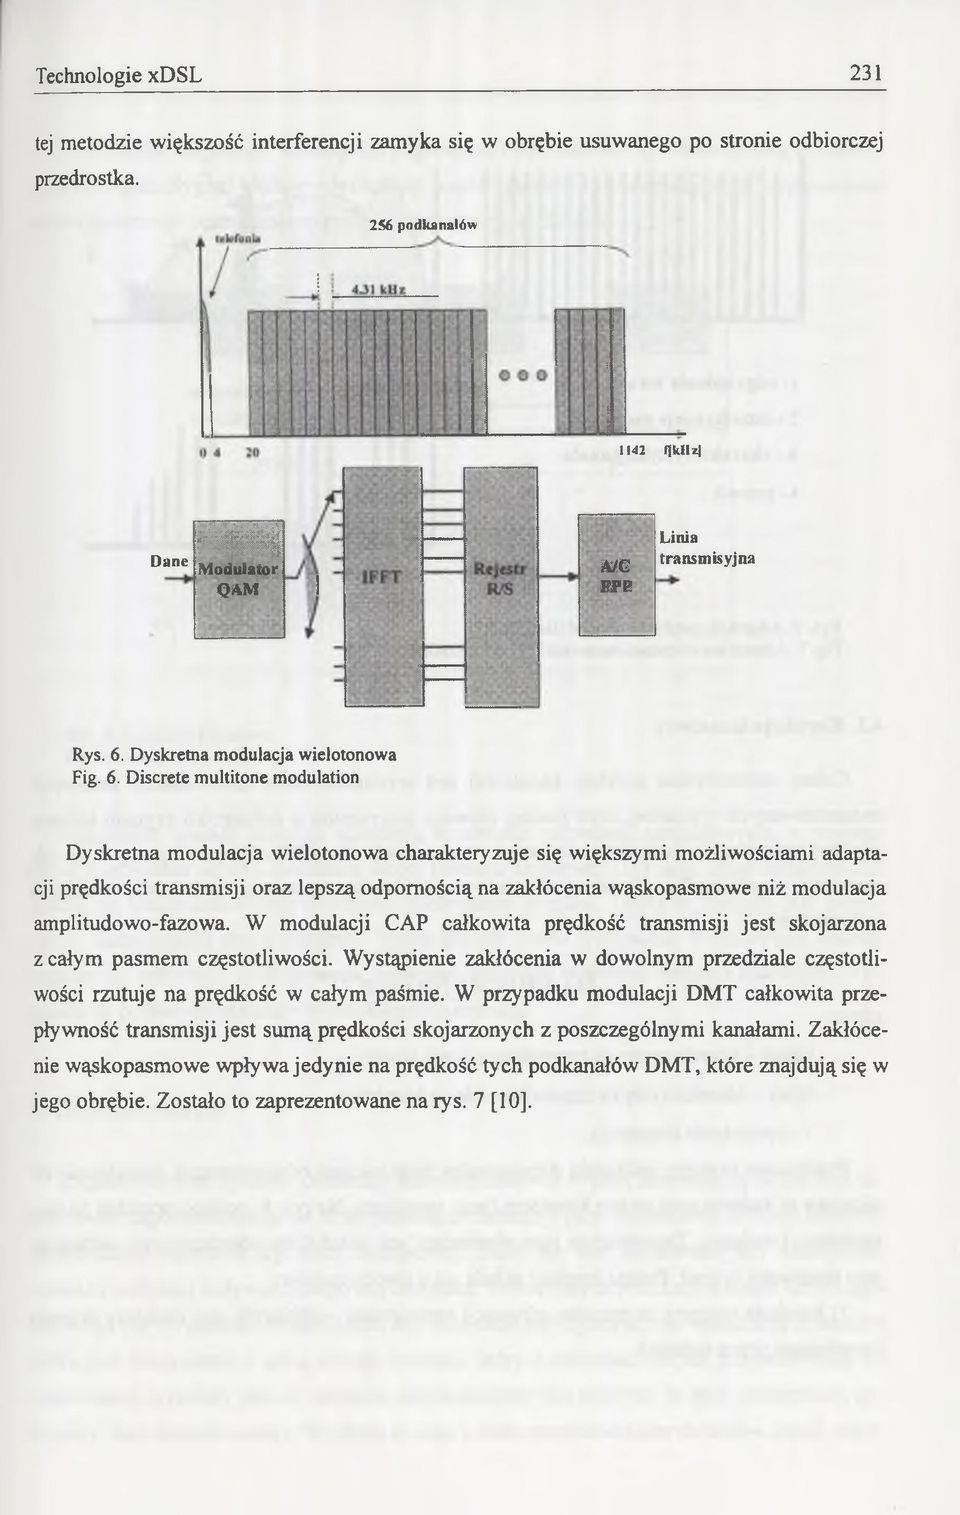 Dyskretna modulacja wielotonowa Fig. 6.